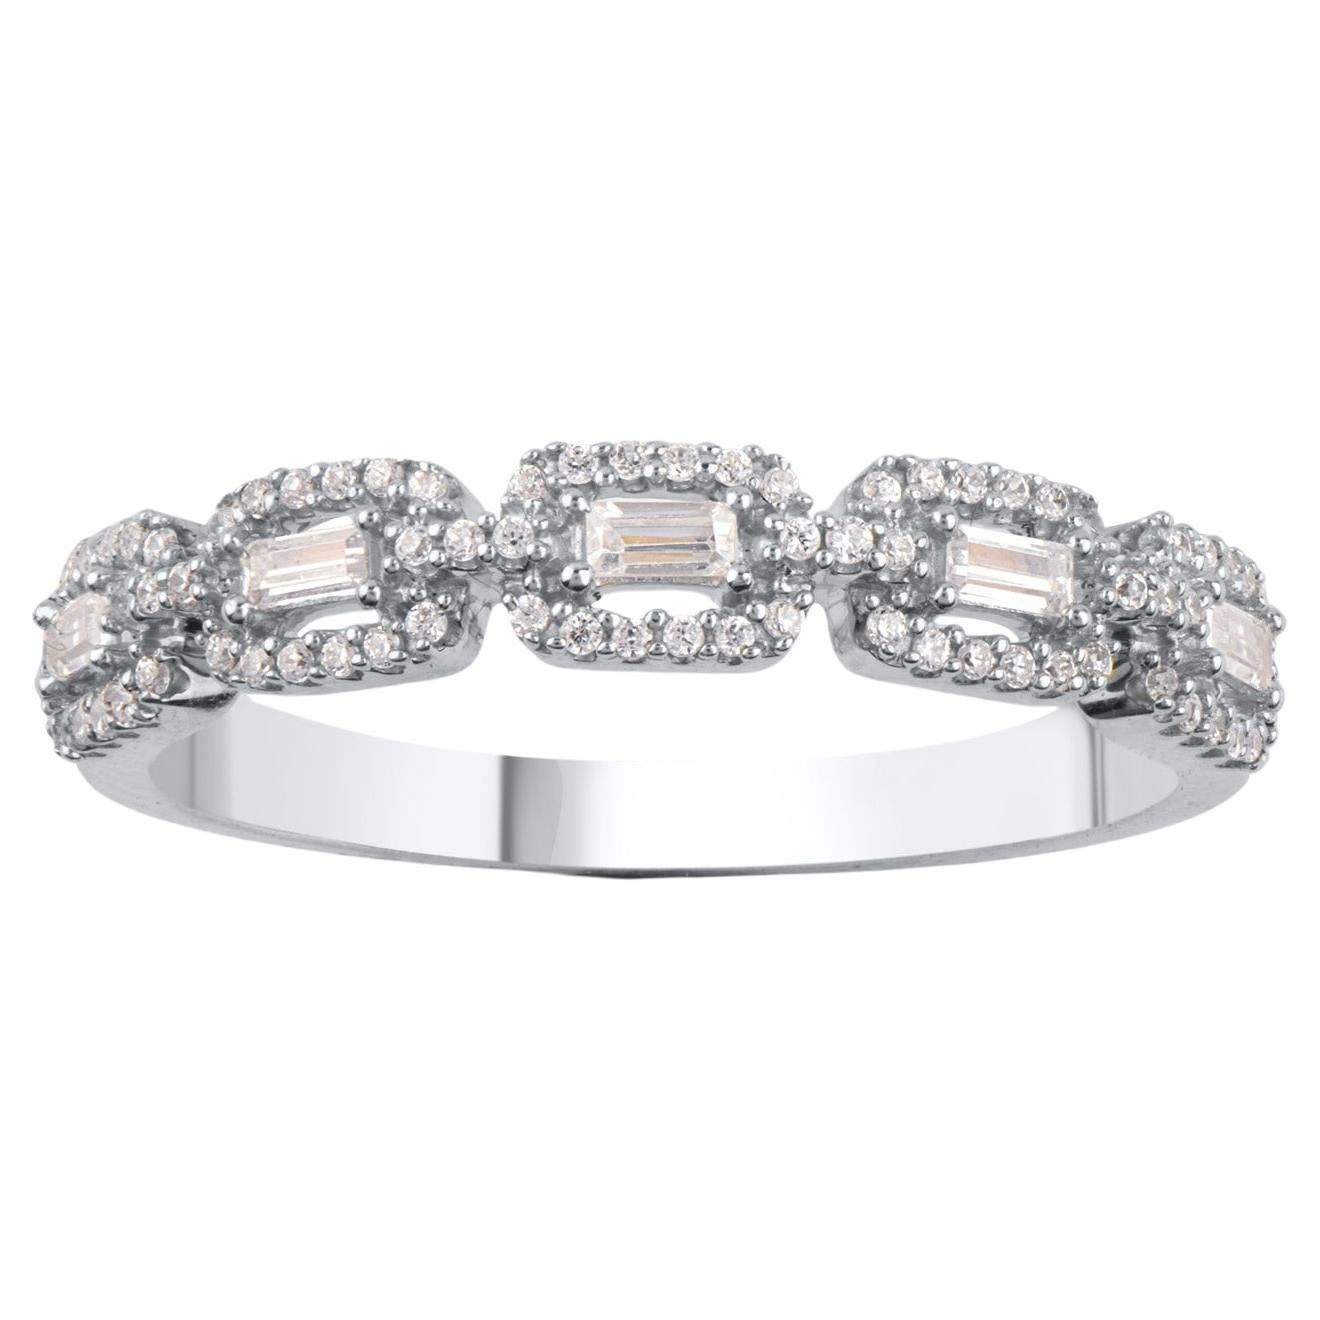 TJD 0.25 Carat Natural Diamond 14 Karat White Gold Stackable Wedding Band Ring